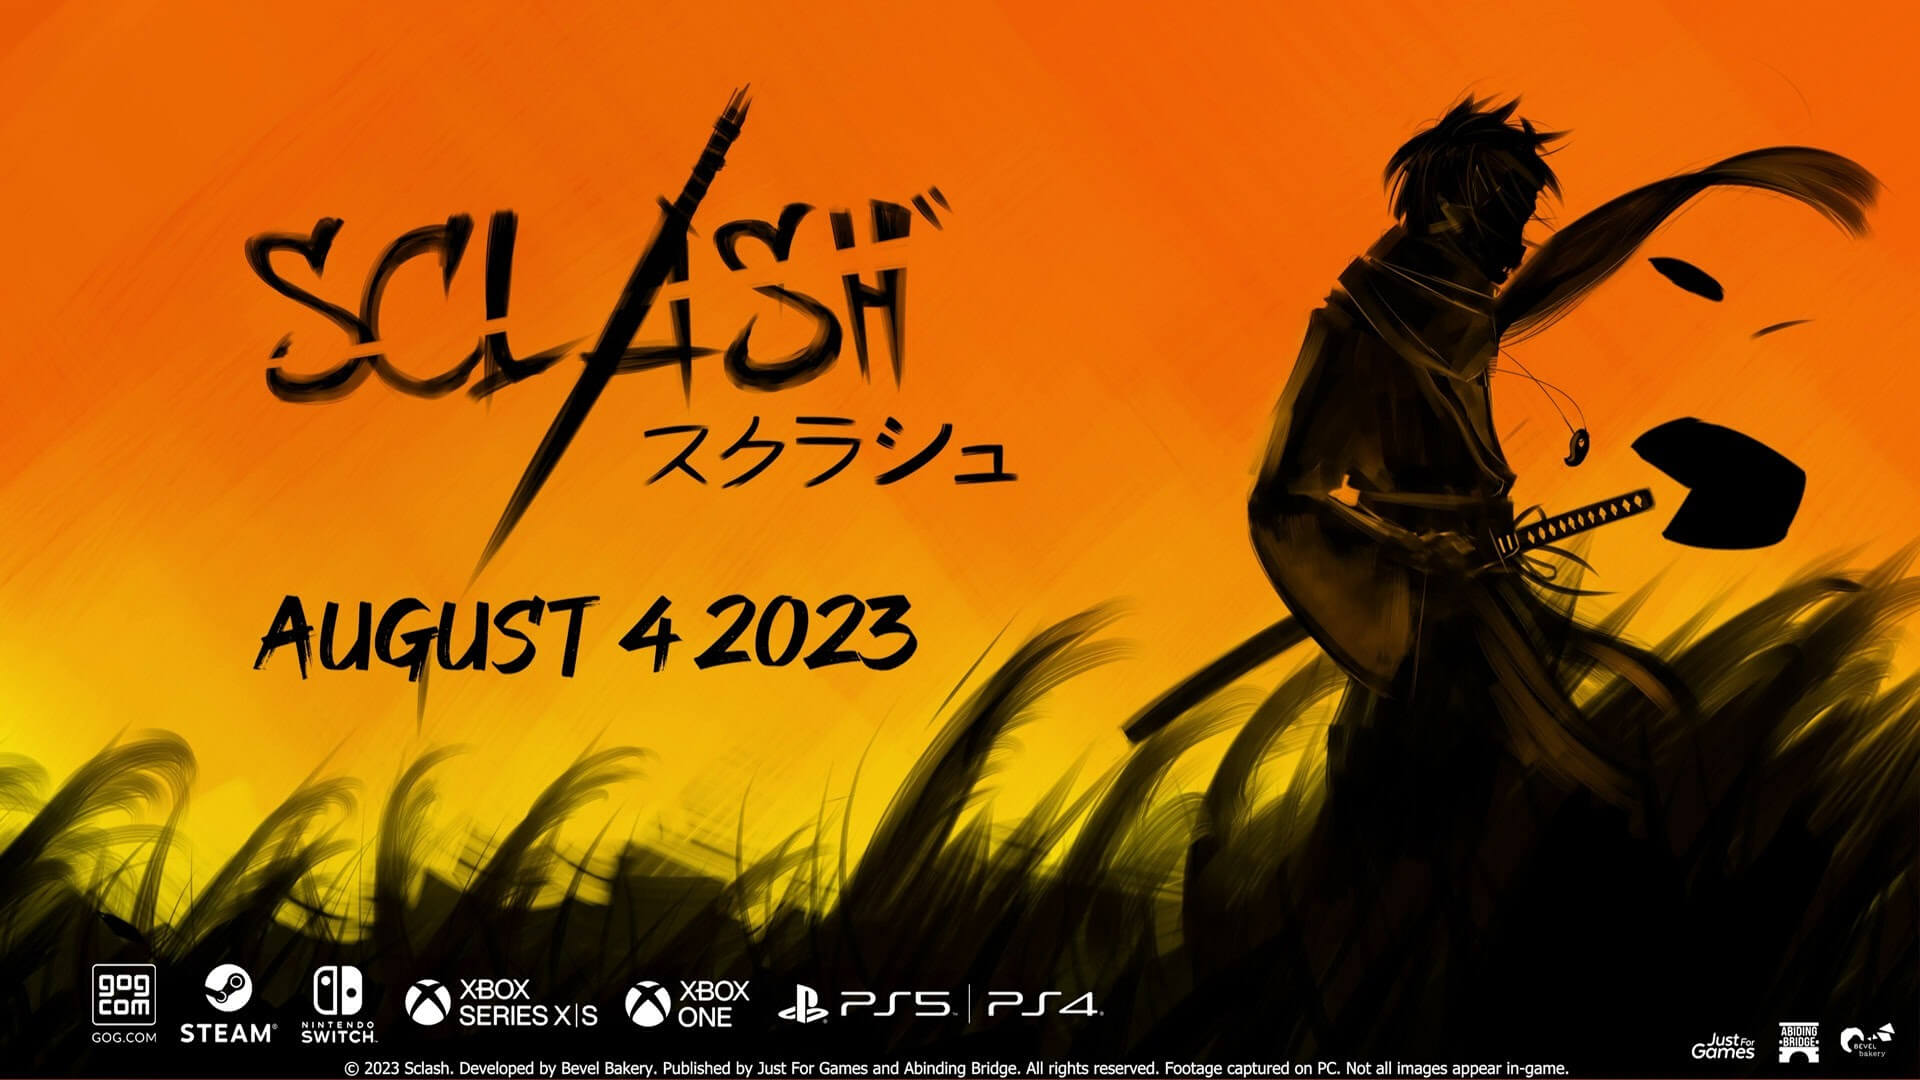 Sclash, o jogo de luta samurai chega em 4 de agosto de 2023 - Última Ficha